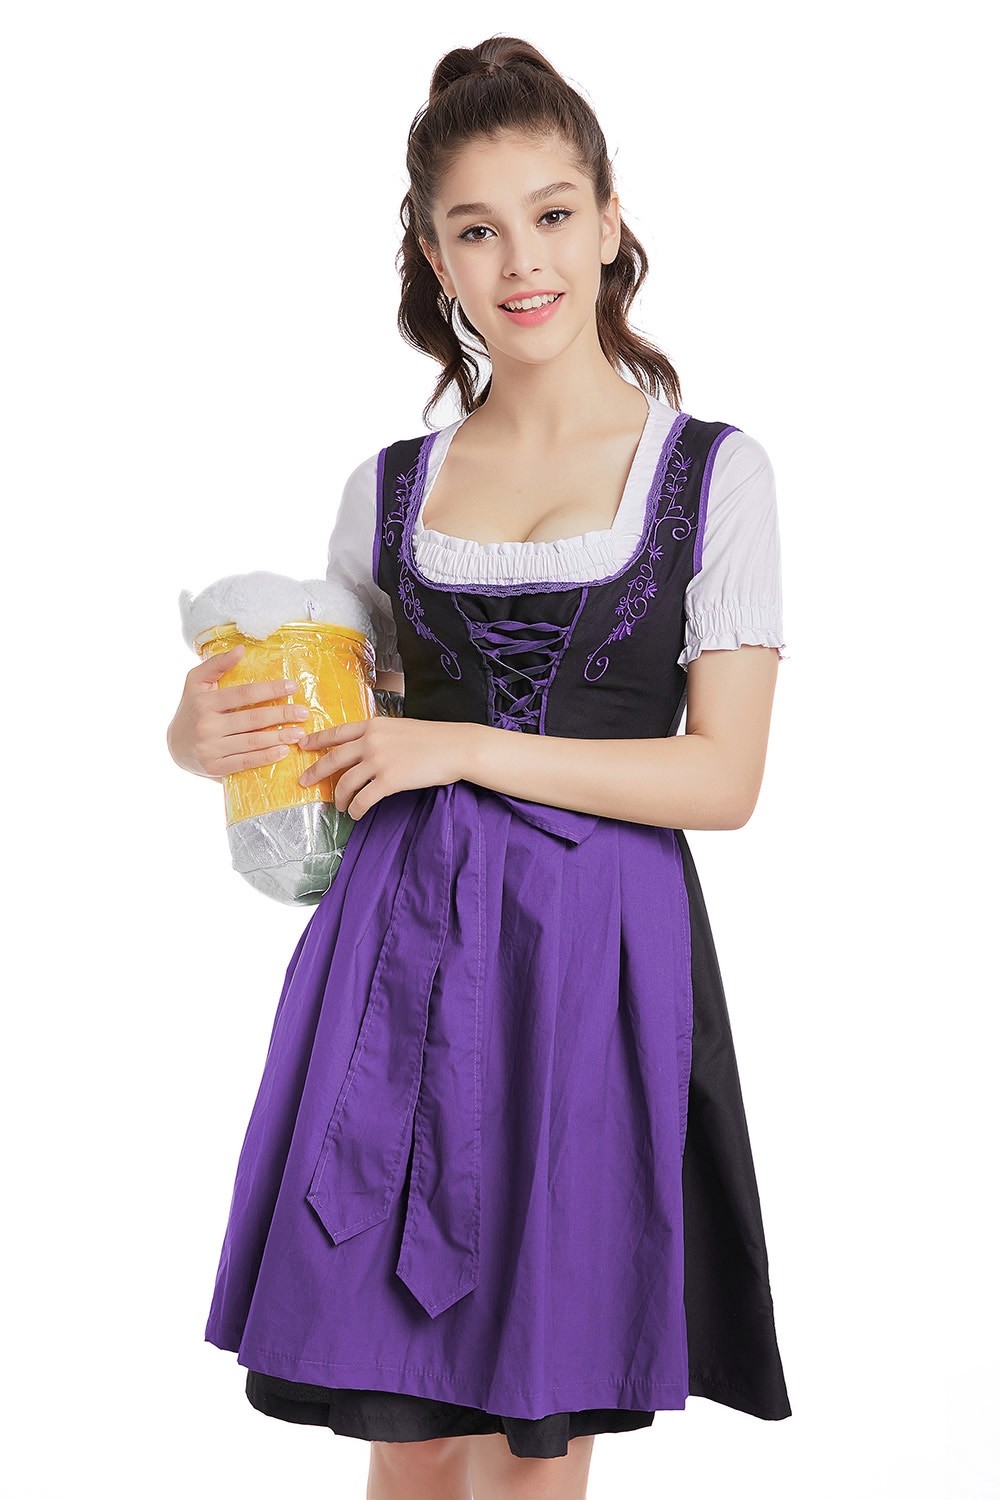 Ladies Oktoberfest German Bavarian Beer Maid Vintage Costume Lederhosen